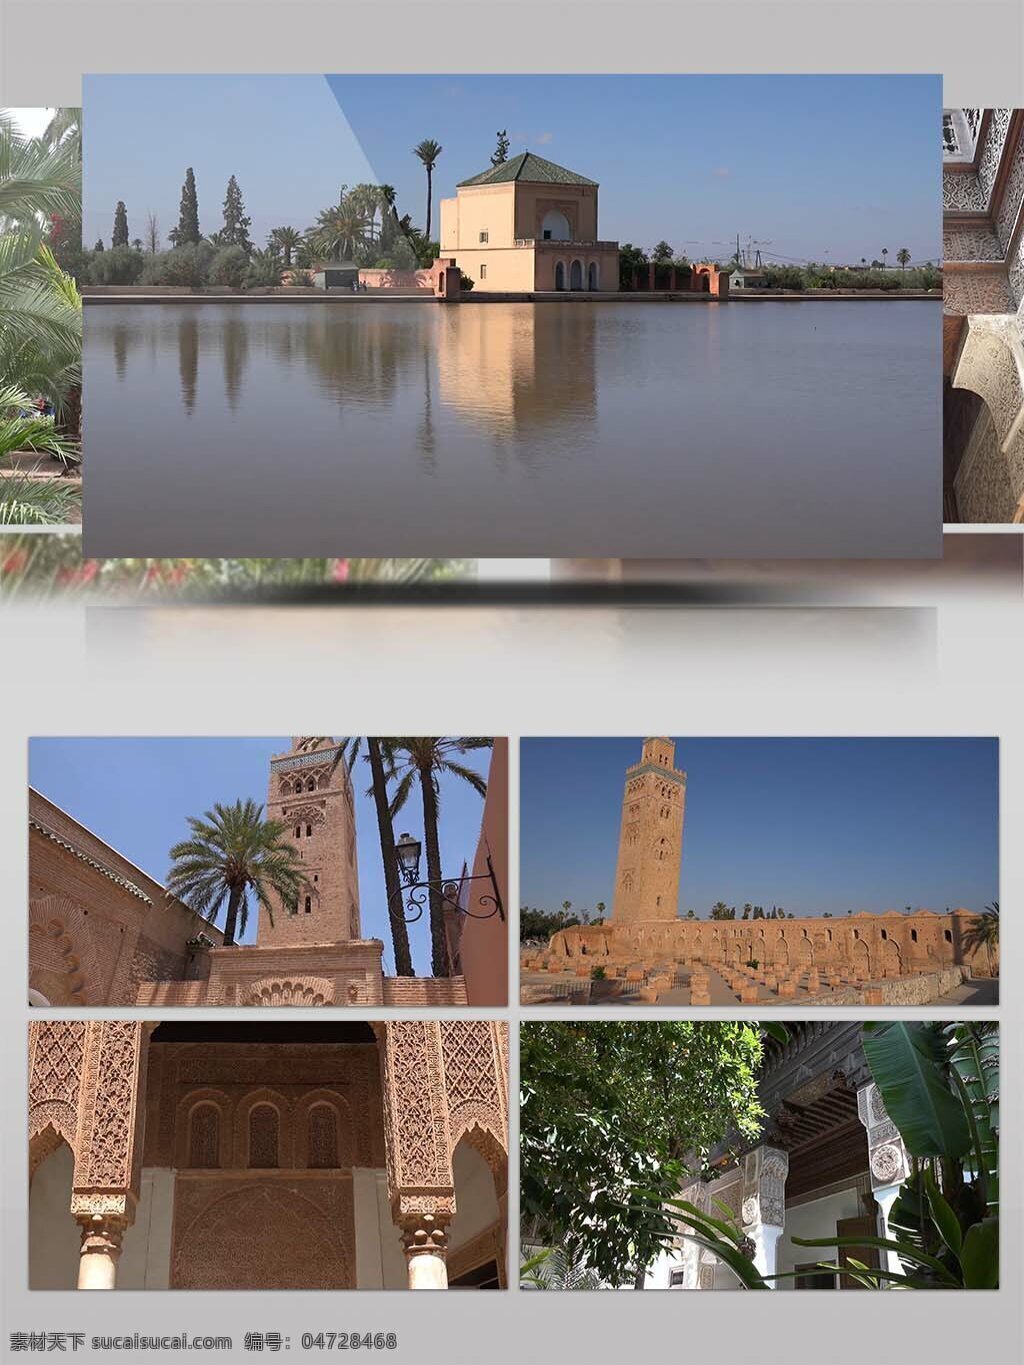 4k 超 高清 实拍 摩洛哥 马拉喀什 旅游 宣传 4k视频 超高清视频 国外风光 国外景观 景点 摩洛哥旅游 实拍视频 唯美景观 著名景观